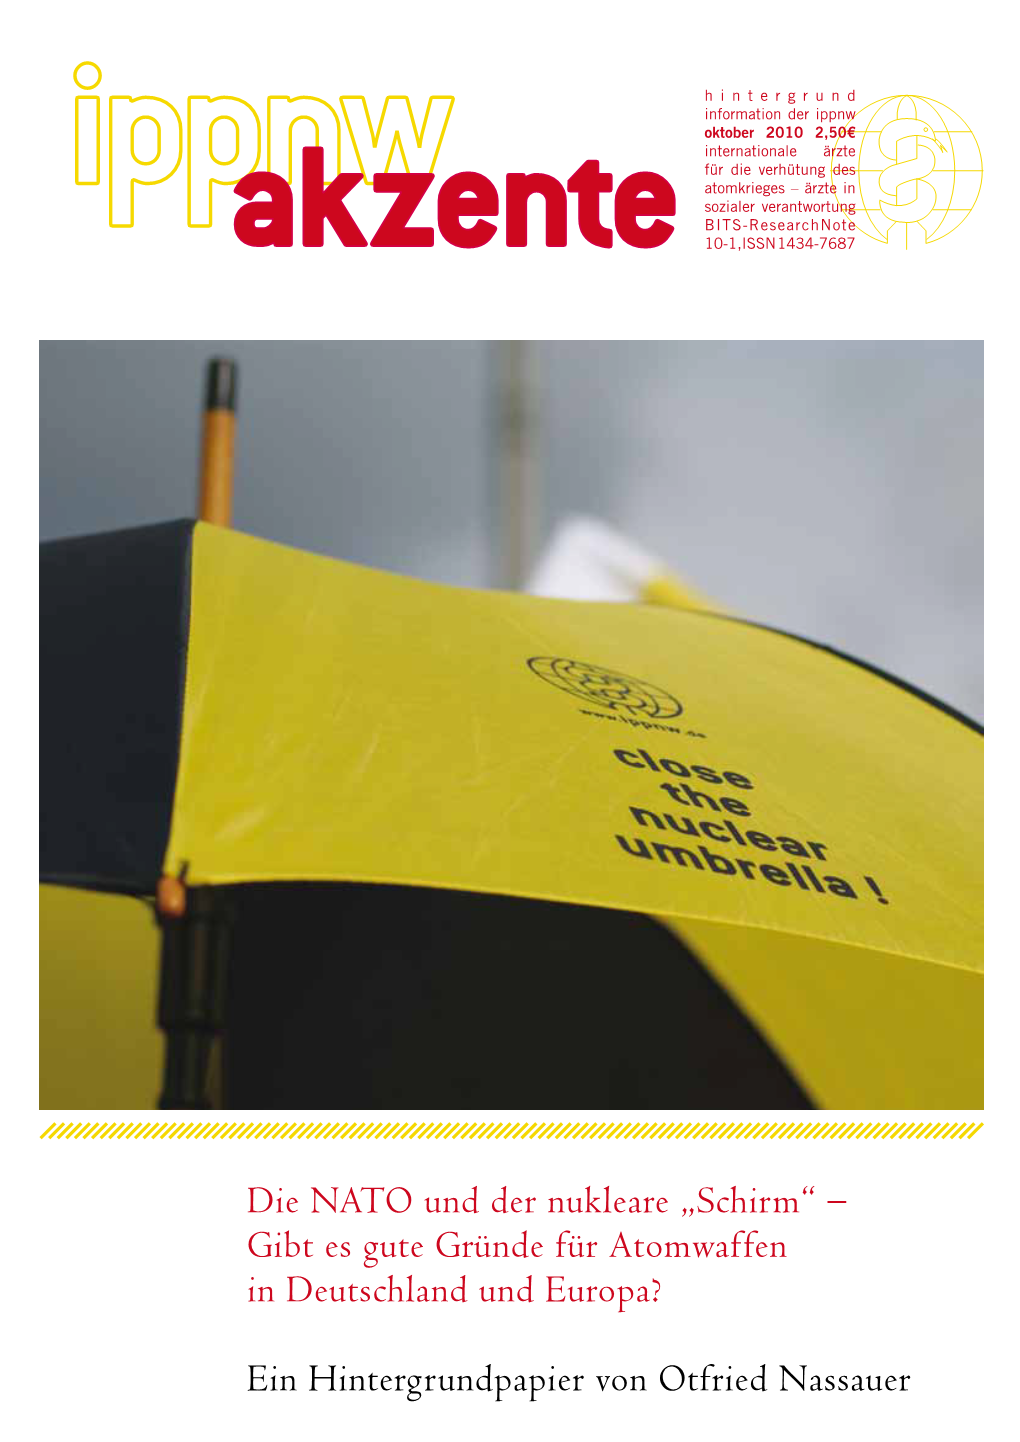 Die NATO Und Der Nukleare „Schirm“ – Gibt Es Gute Gründe Für Atomwaffen in Deutschland Und Europa?